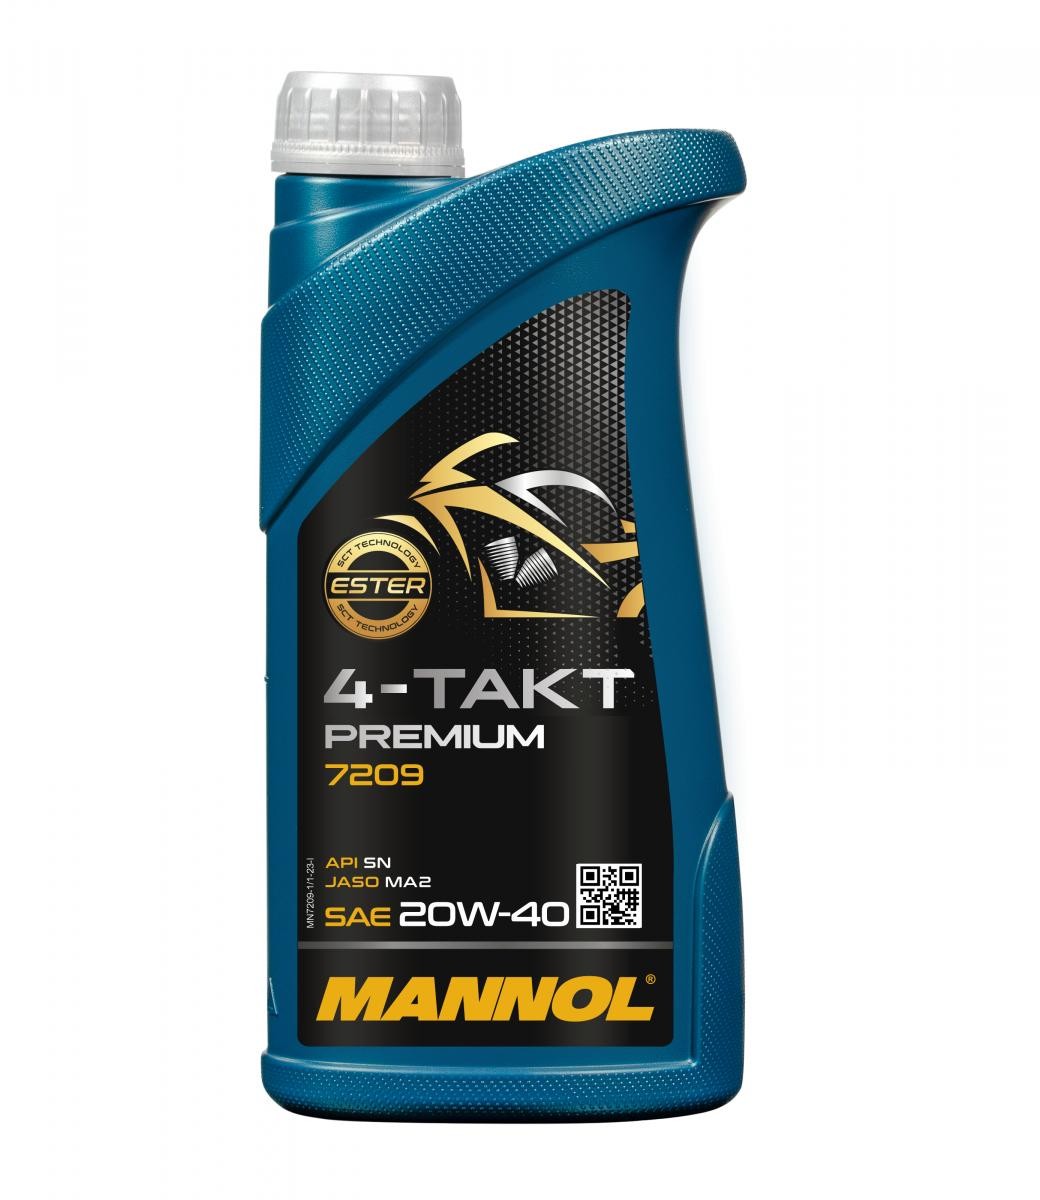 MANNOL Premium 20W-40, 1l Motorenöl MN7209-1 online kaufen